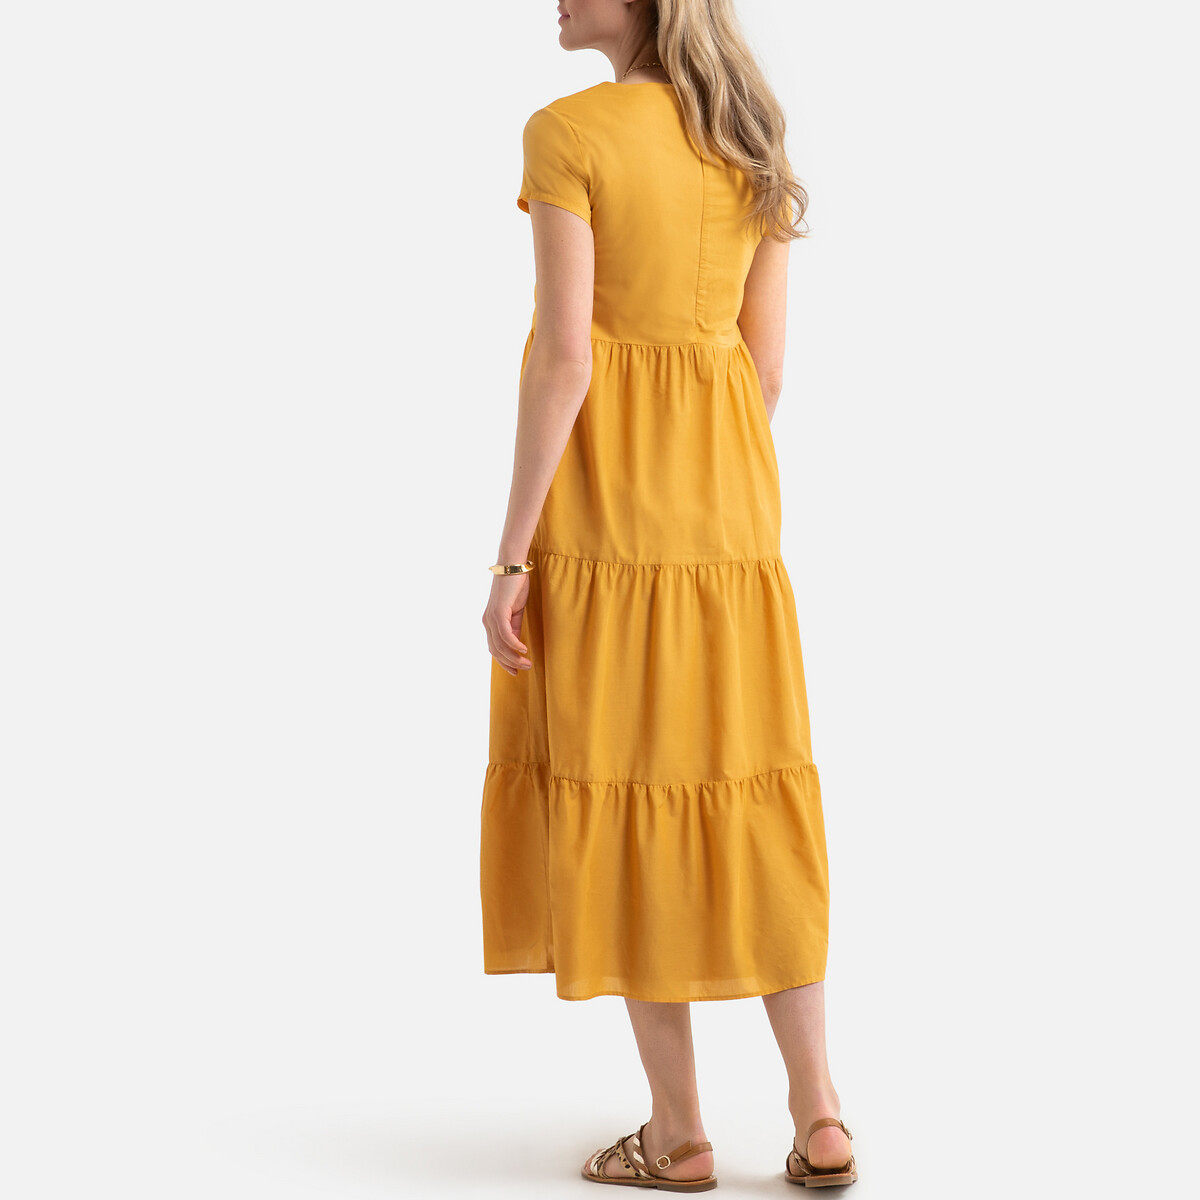 Платье LaRedoute Длинное расклешенное с короткими рукавами 46 (FR) - 52 (RUS) желтый, размер 46 (FR) - 52 (RUS) Длинное расклешенное с короткими рукавами 46 (FR) - 52 (RUS) желтый - фото 4